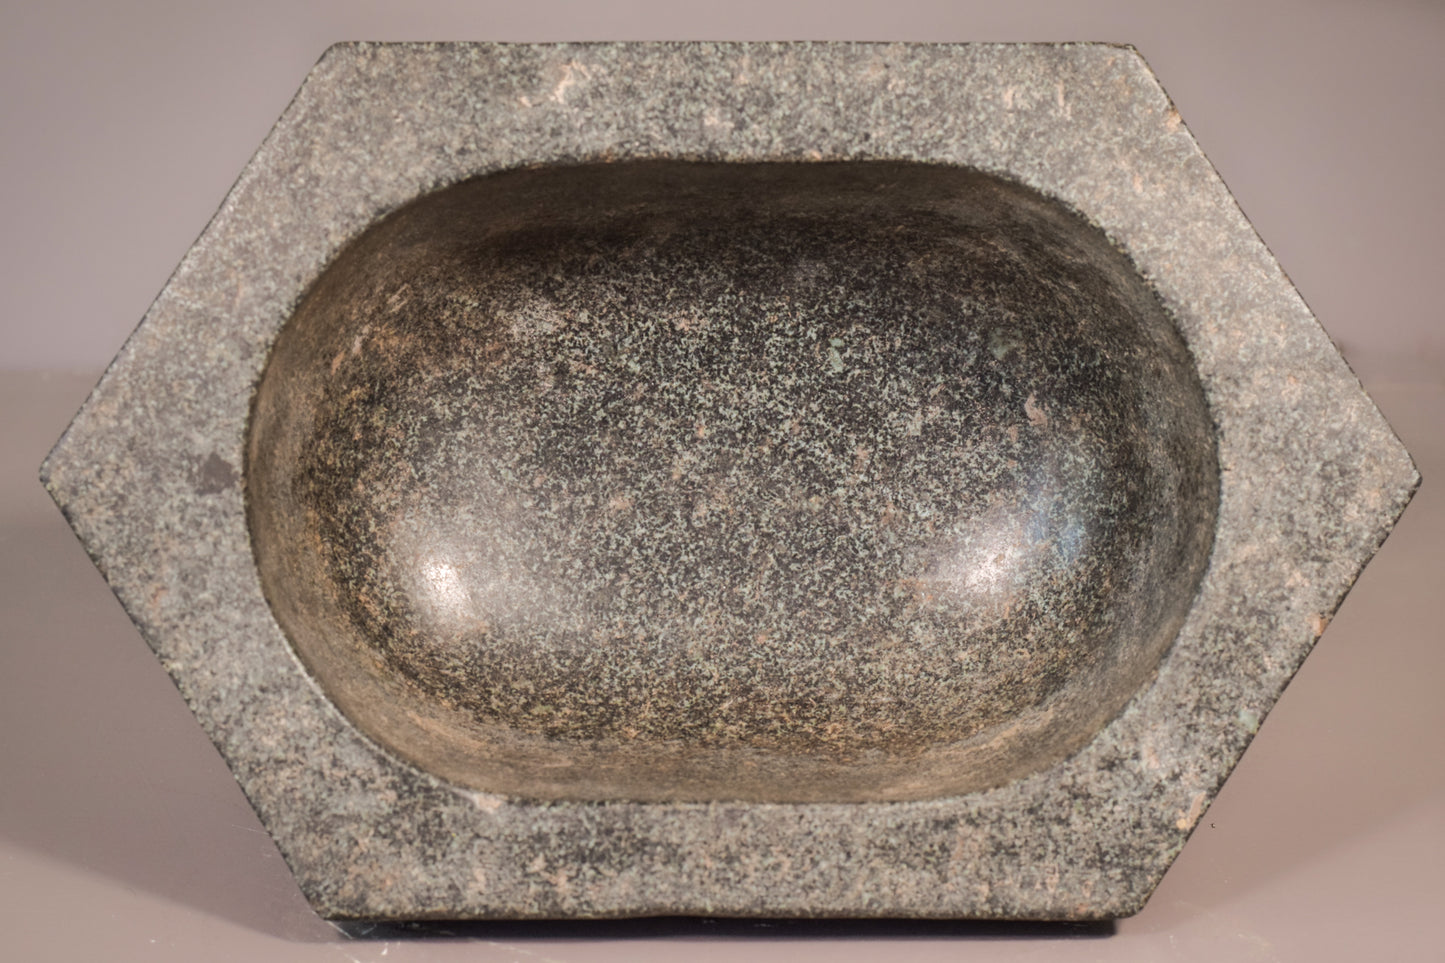 Cuenco oriental antiguo de piedra tallada